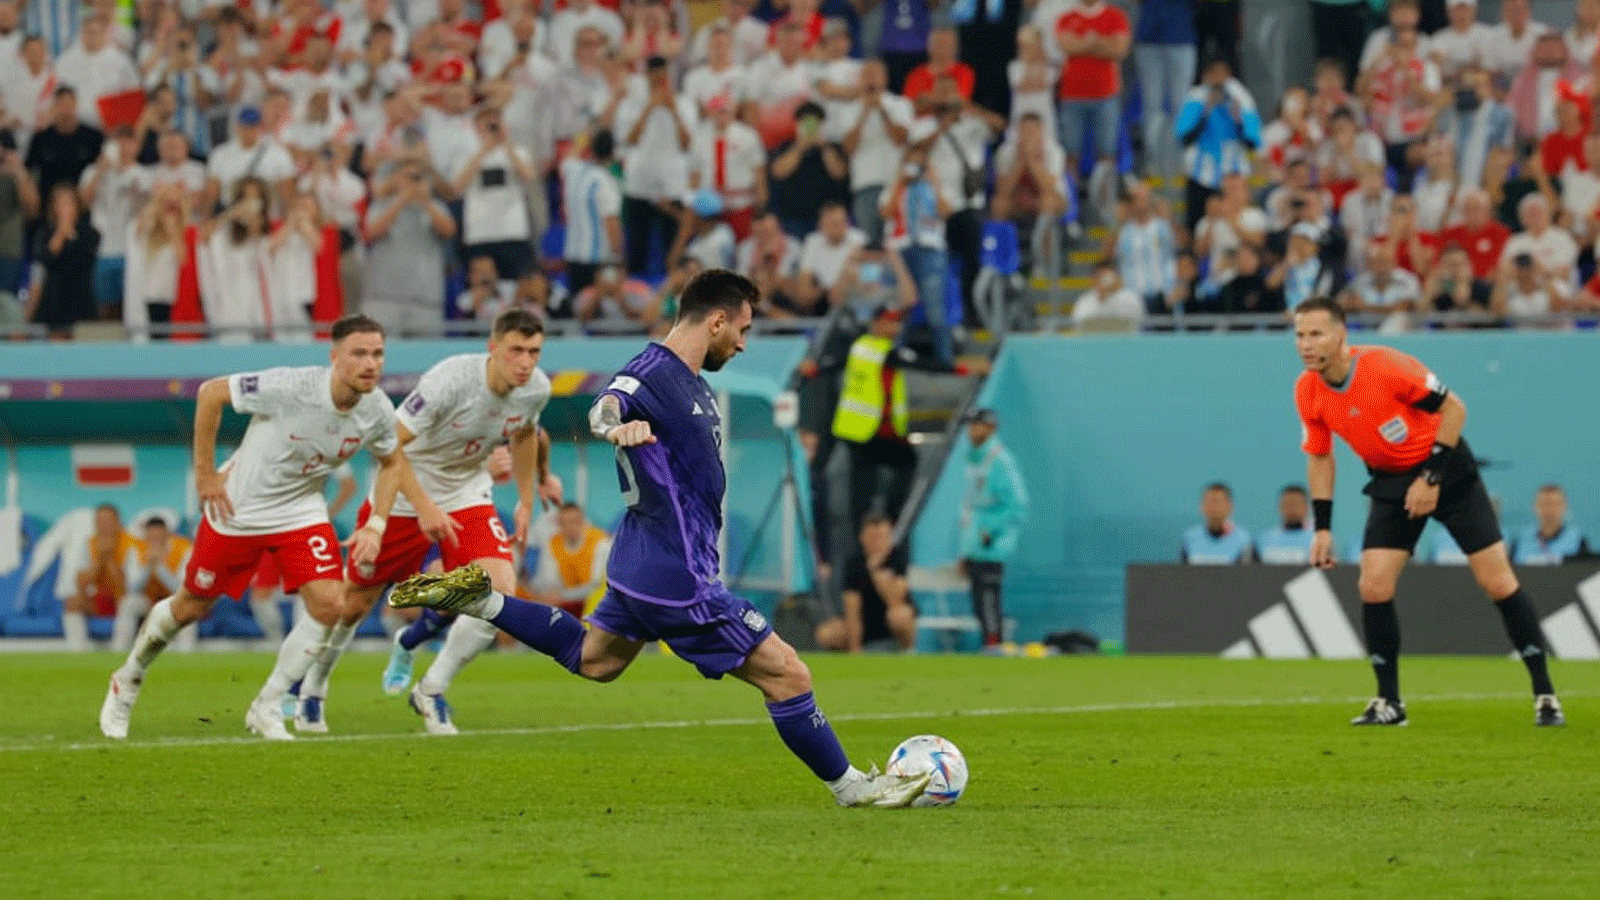  المهاجم الأرجنتيني ليونيل ميسي يسدد ركلة جزاء خلال مباراة قطر 2022 في المجموعة الثالثة لكرة القدم بين بولندا والأرجنتين.